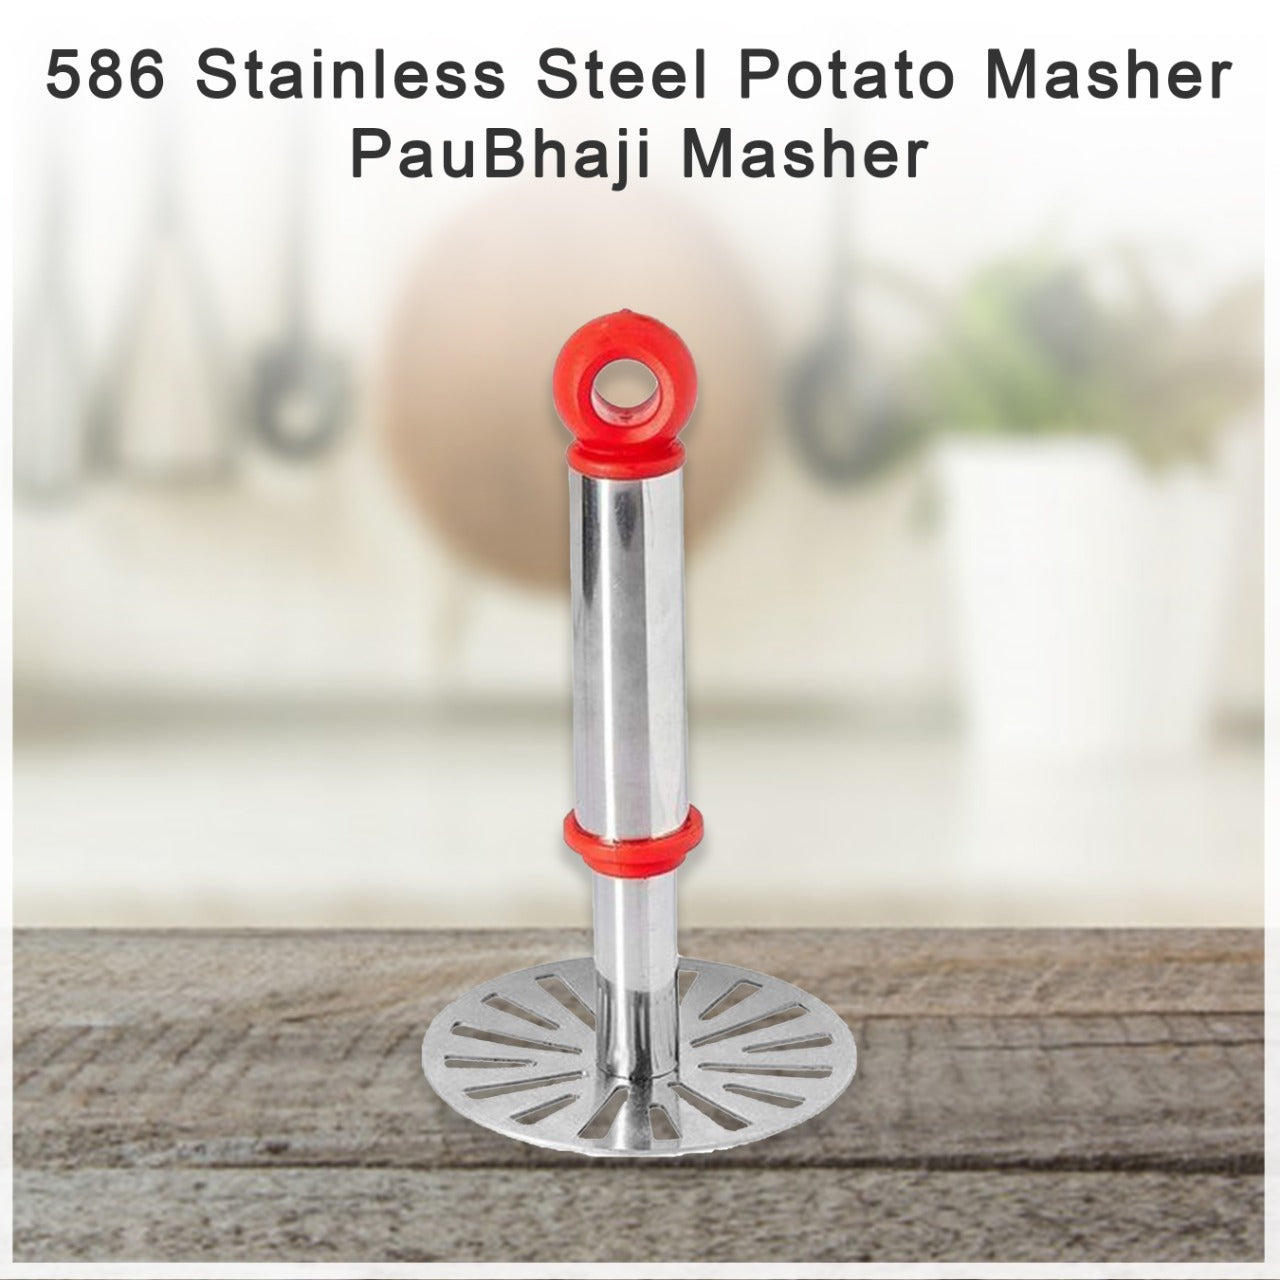 586 Stainless Steel Potato Masher, PauBhaji Masher JK Trends